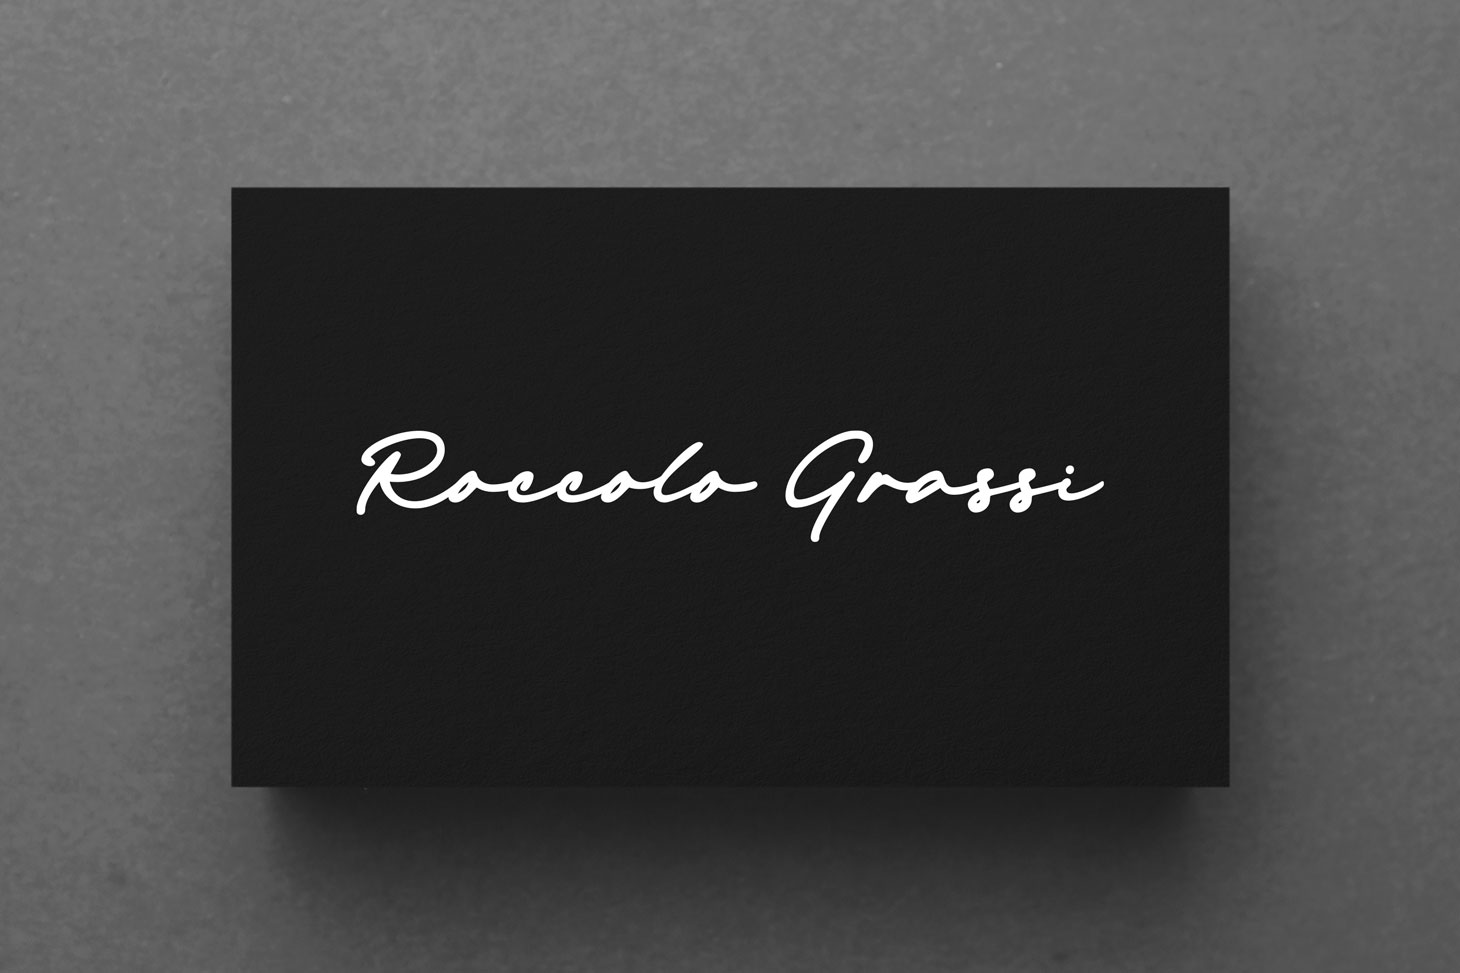 Roccolo-Grassi